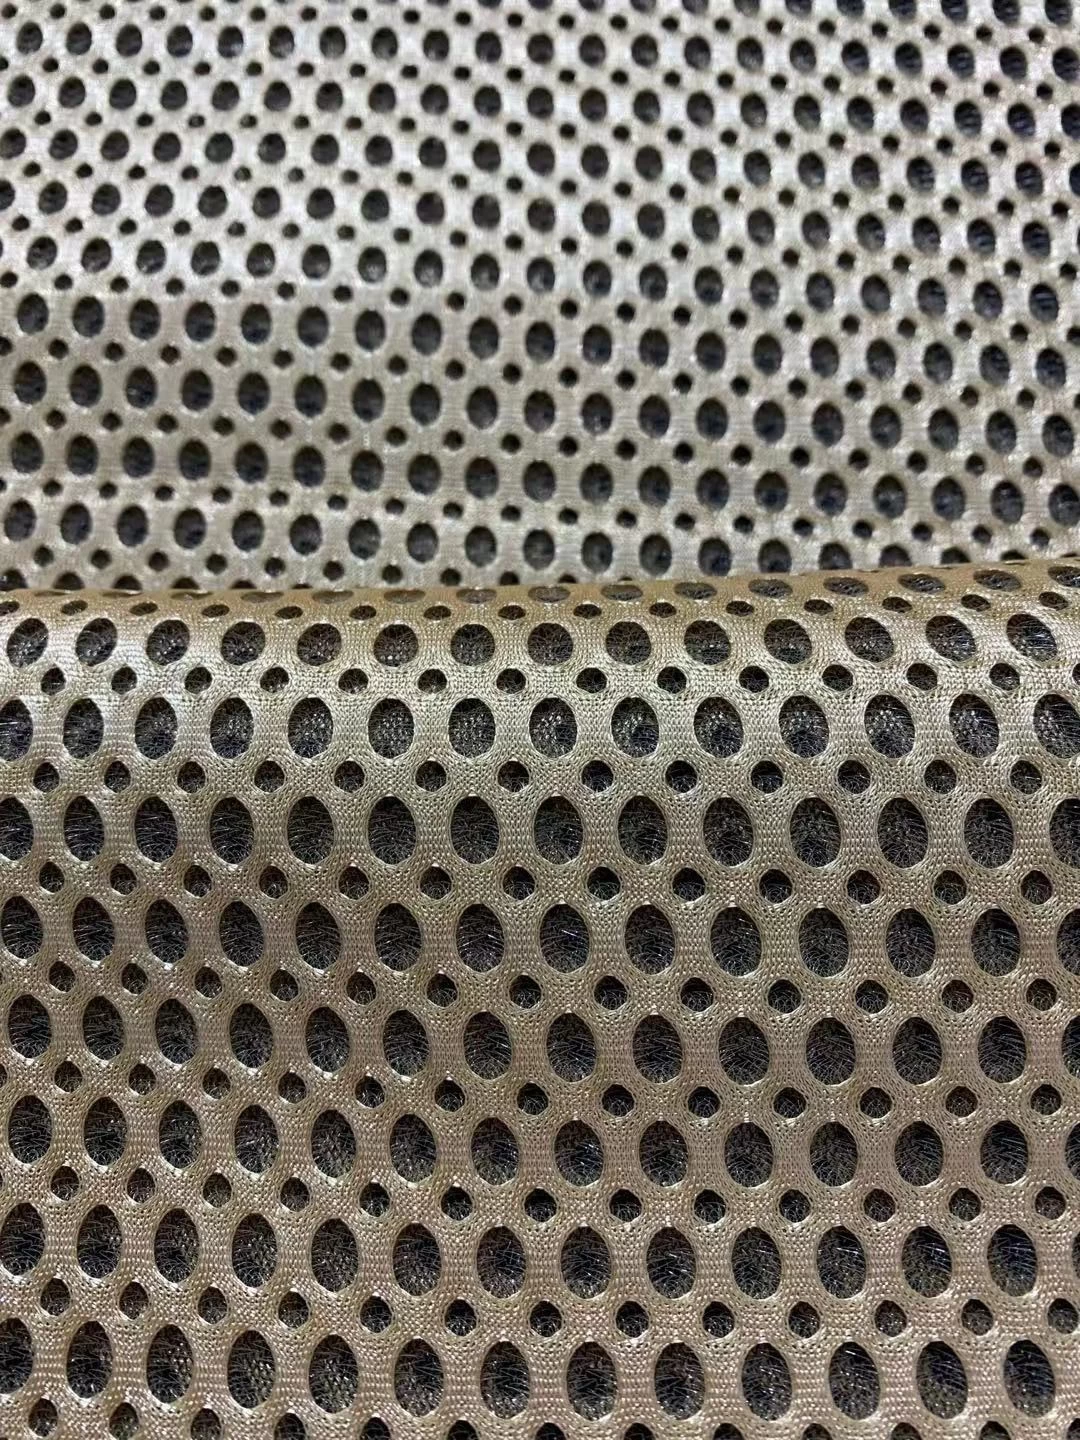 3D space mattress border fabric